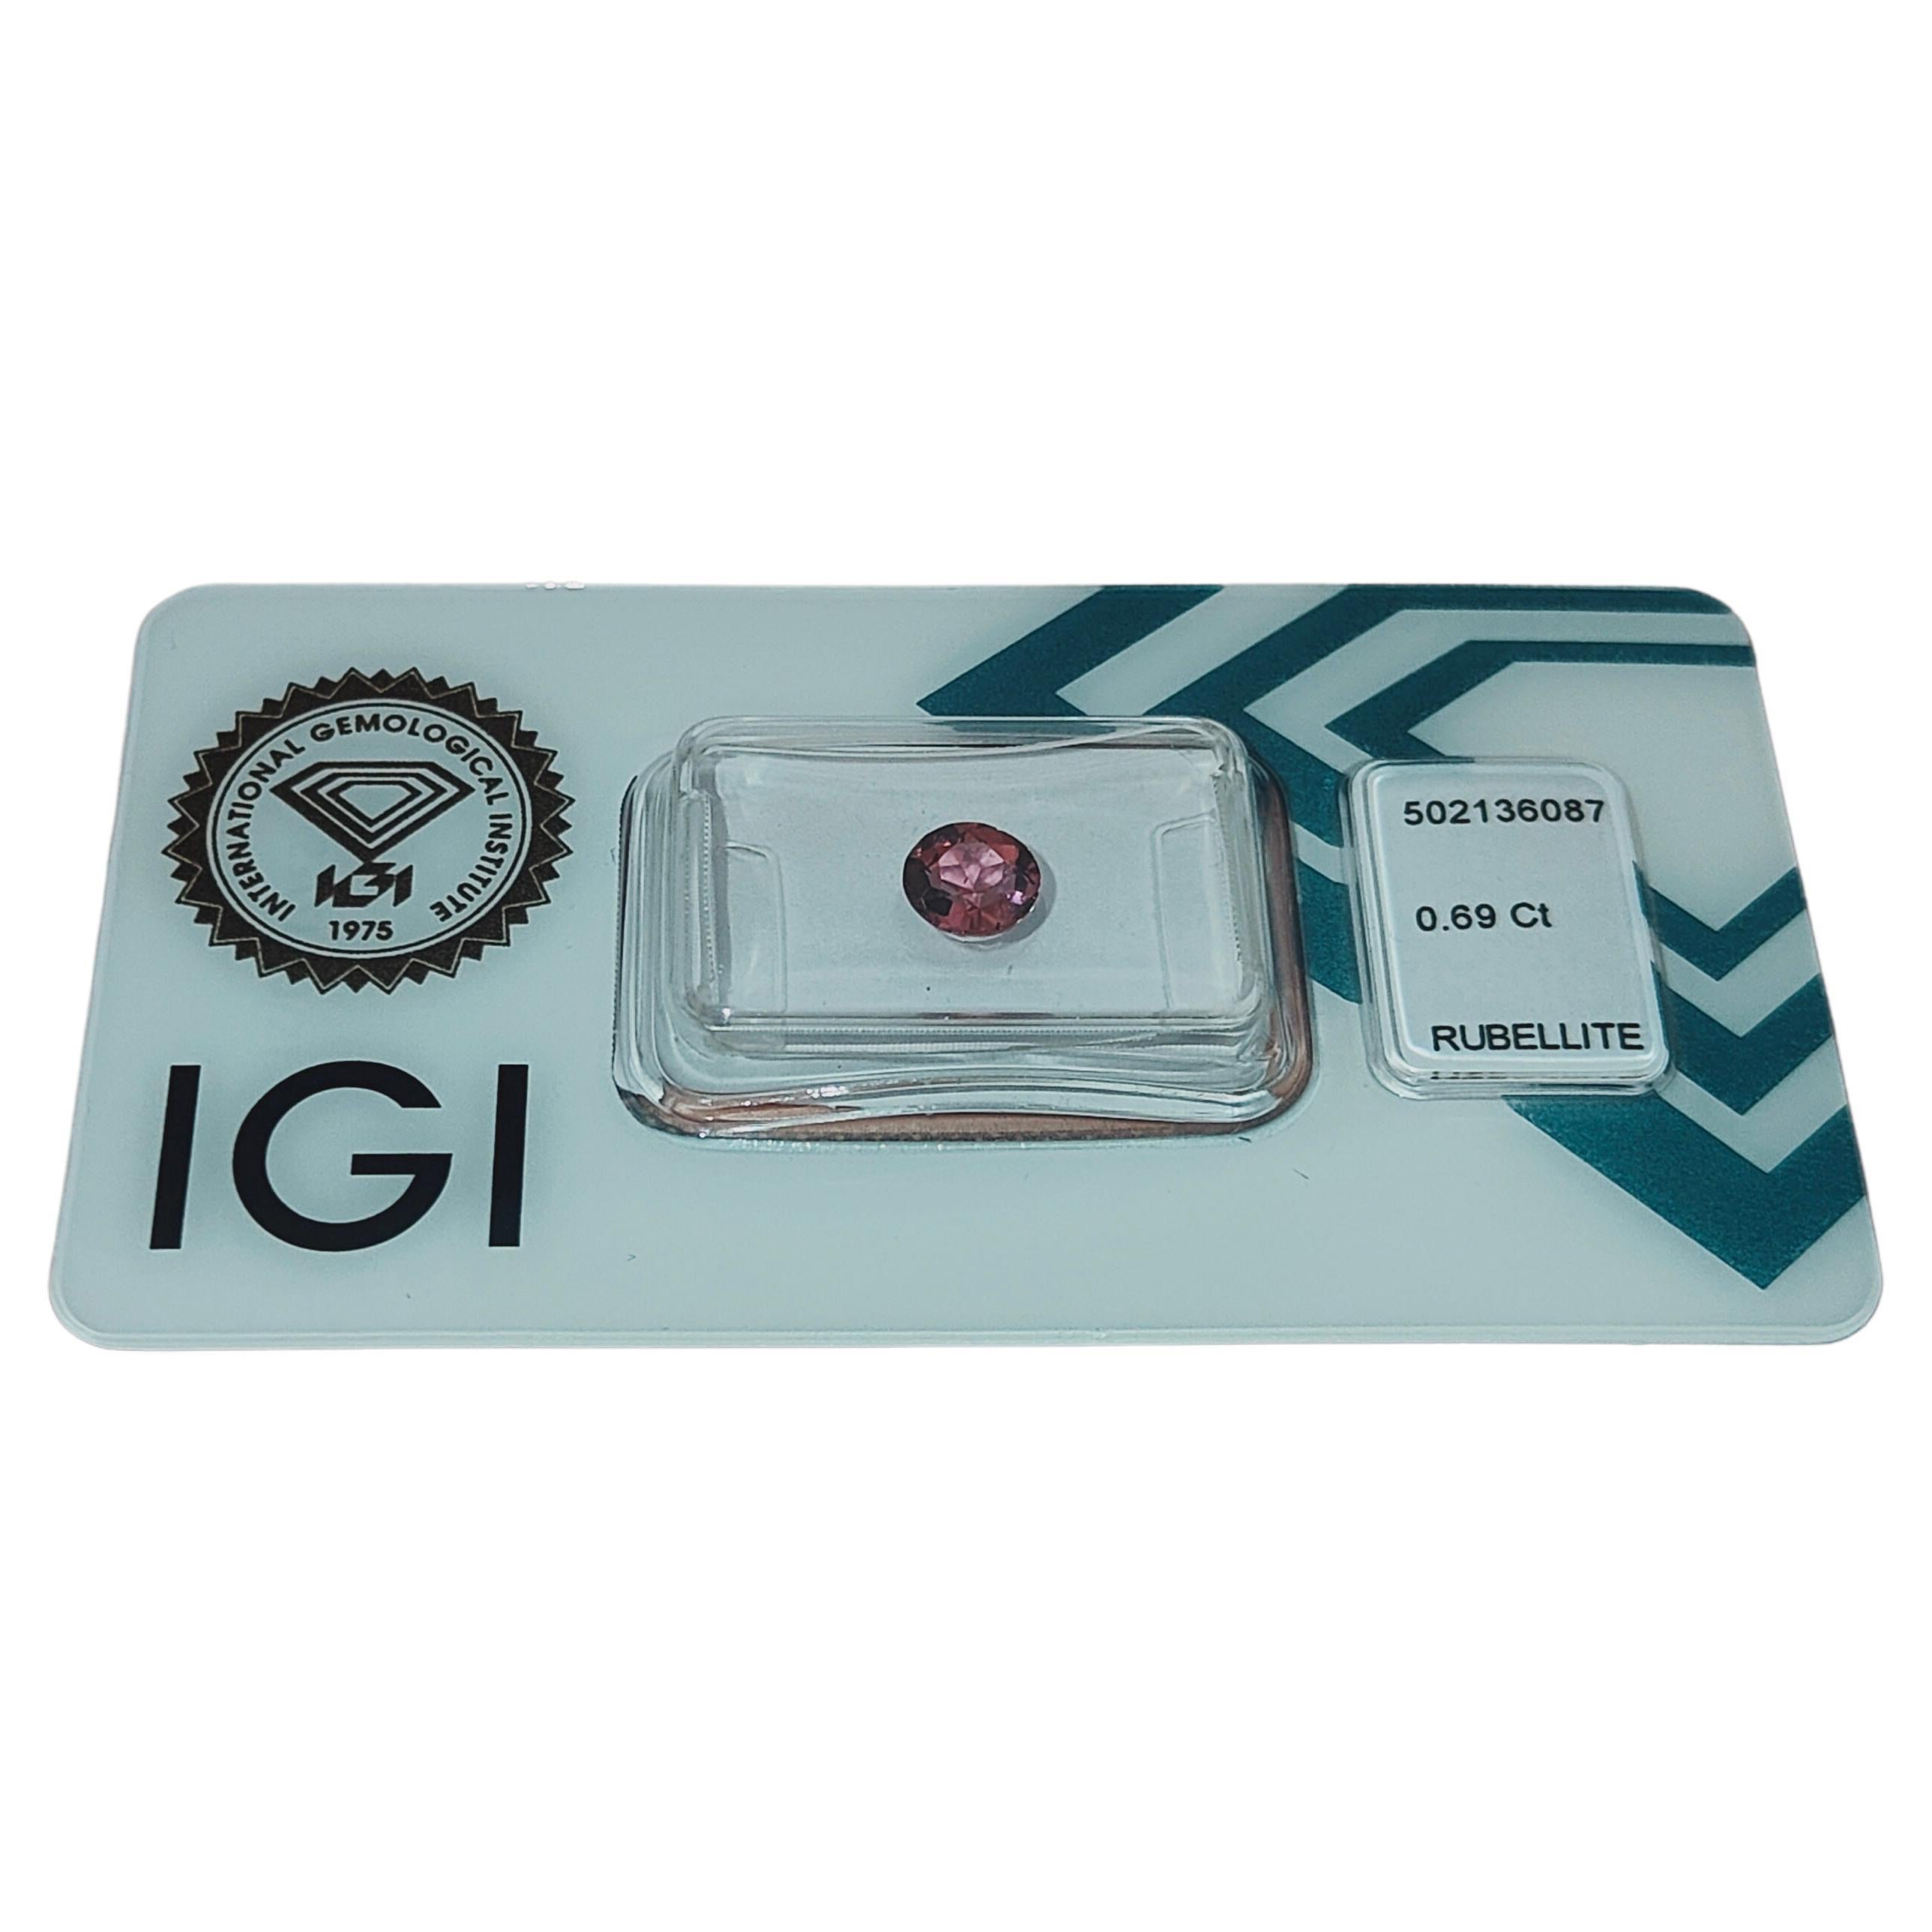 IGI Certified Natural Purplish Pink Rubellite Tourmaline 0.69 Carat Gemstone For Sale